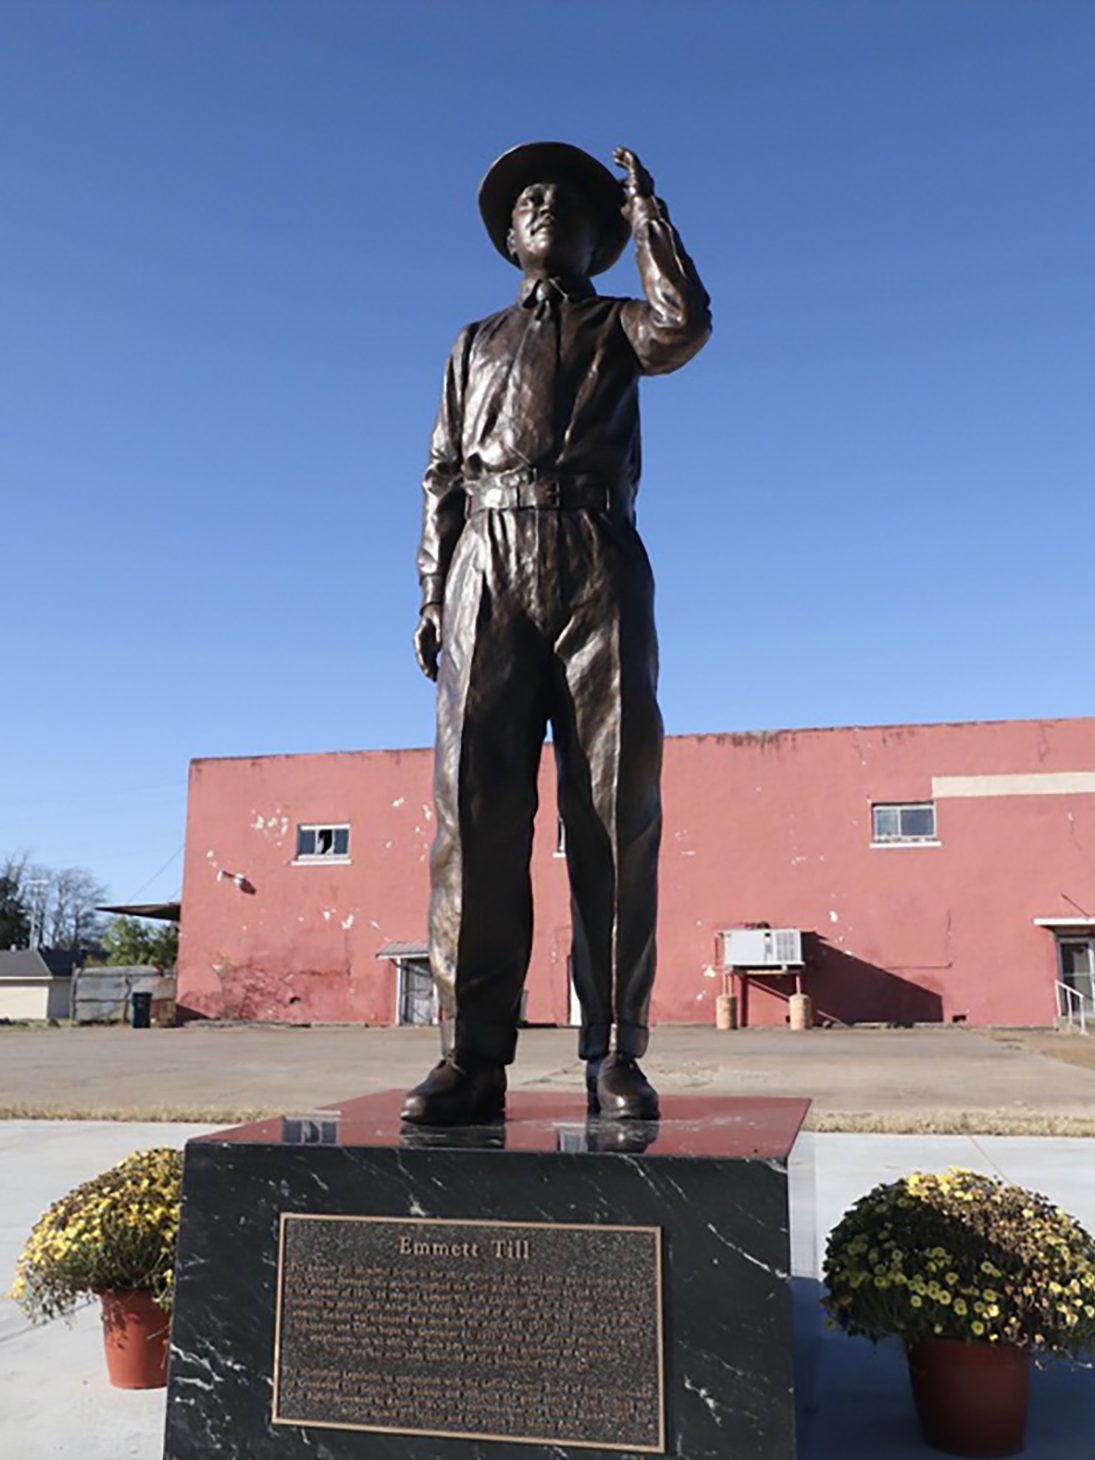 Emmett Till statue in Mississippi